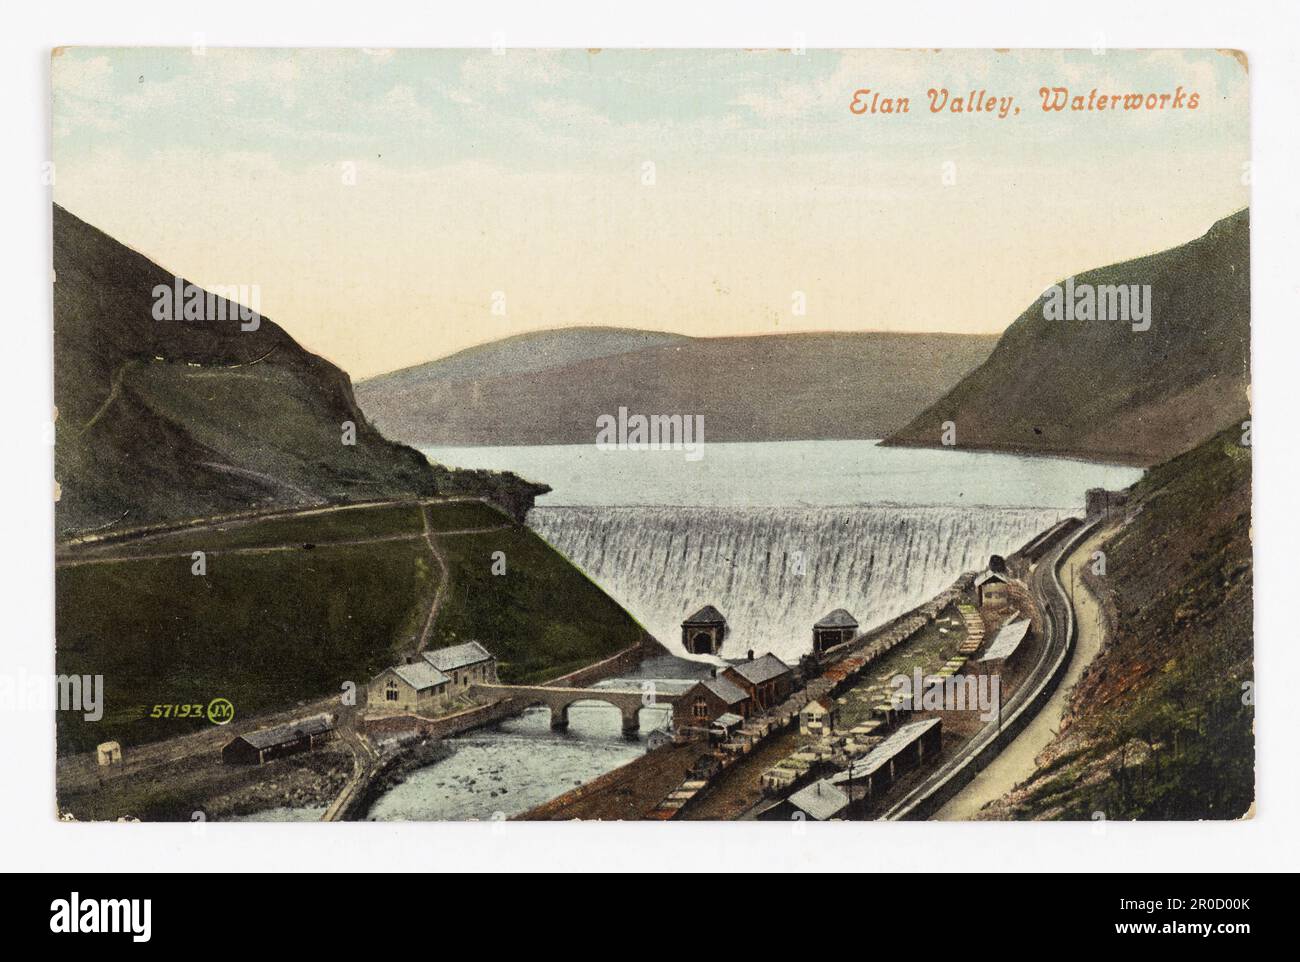 Cartolina - Birmingham Waterworks, Elan Valley, Galles, 1908. Vedute topografiche - Collezione Kesterton. Vista della diga di Caban e del bacino idrico che riforniscono la città di Birmingham con acqua potabile. Foto Stock